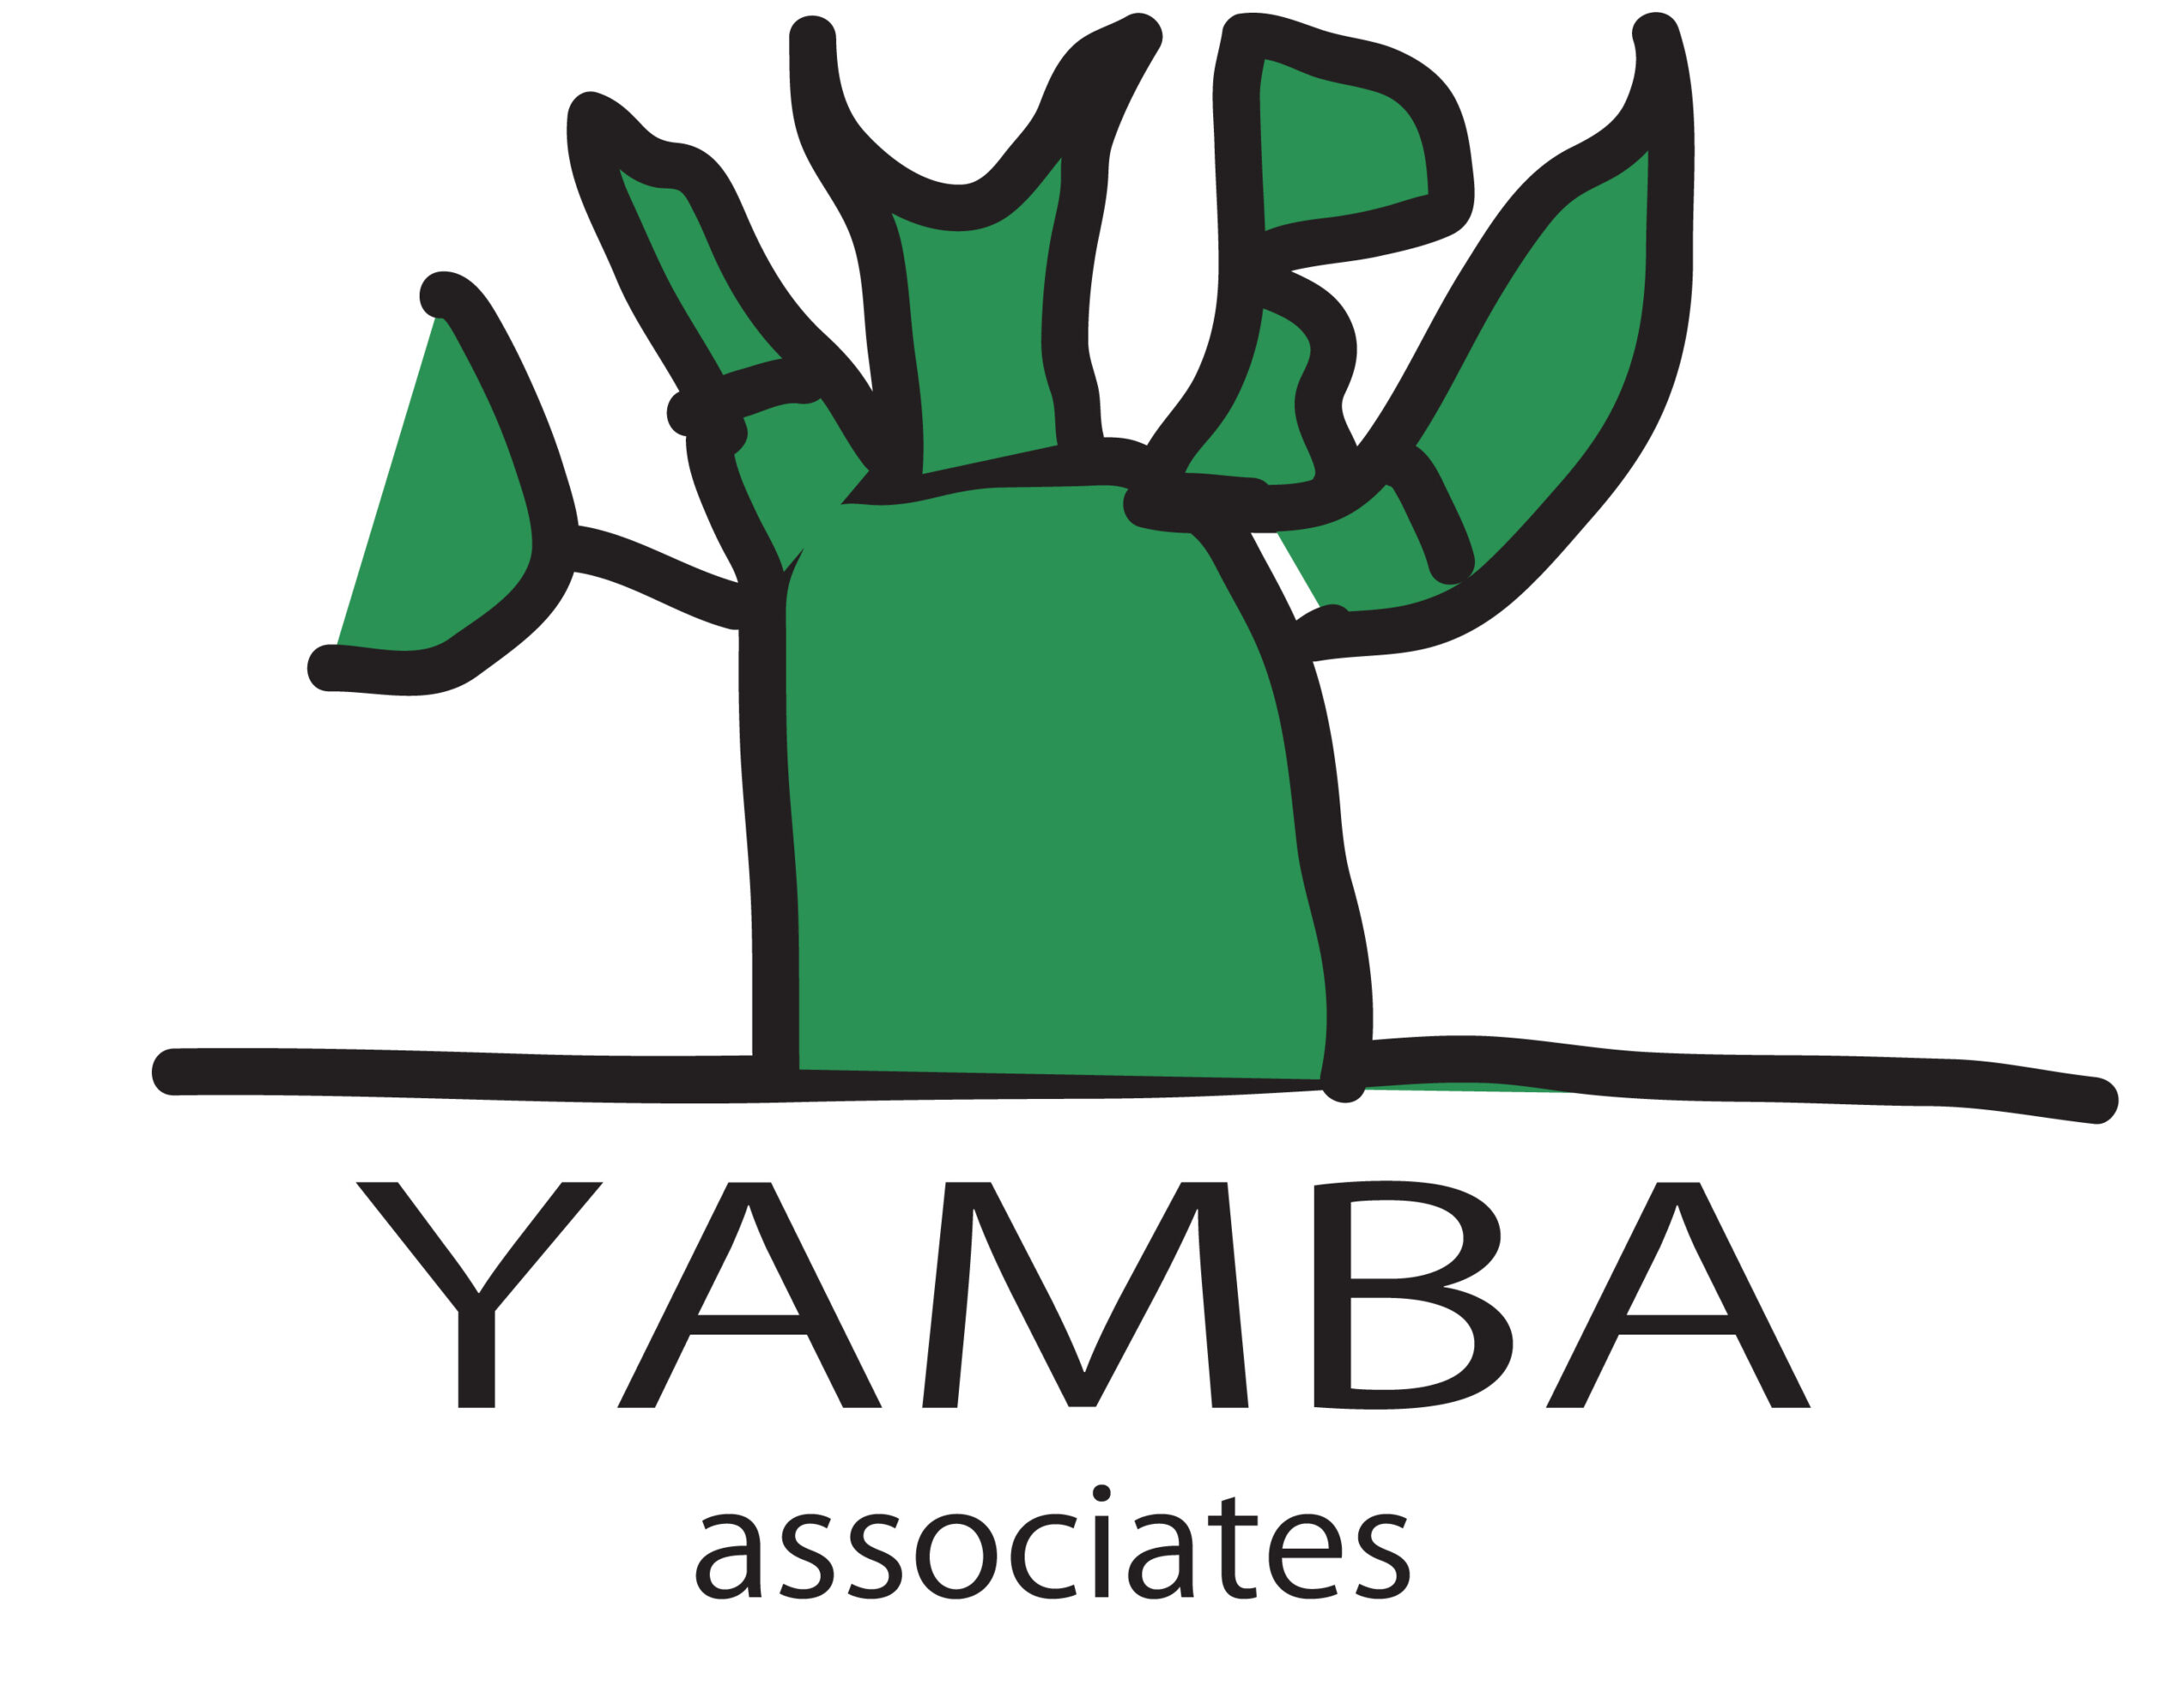 Yamba Associates